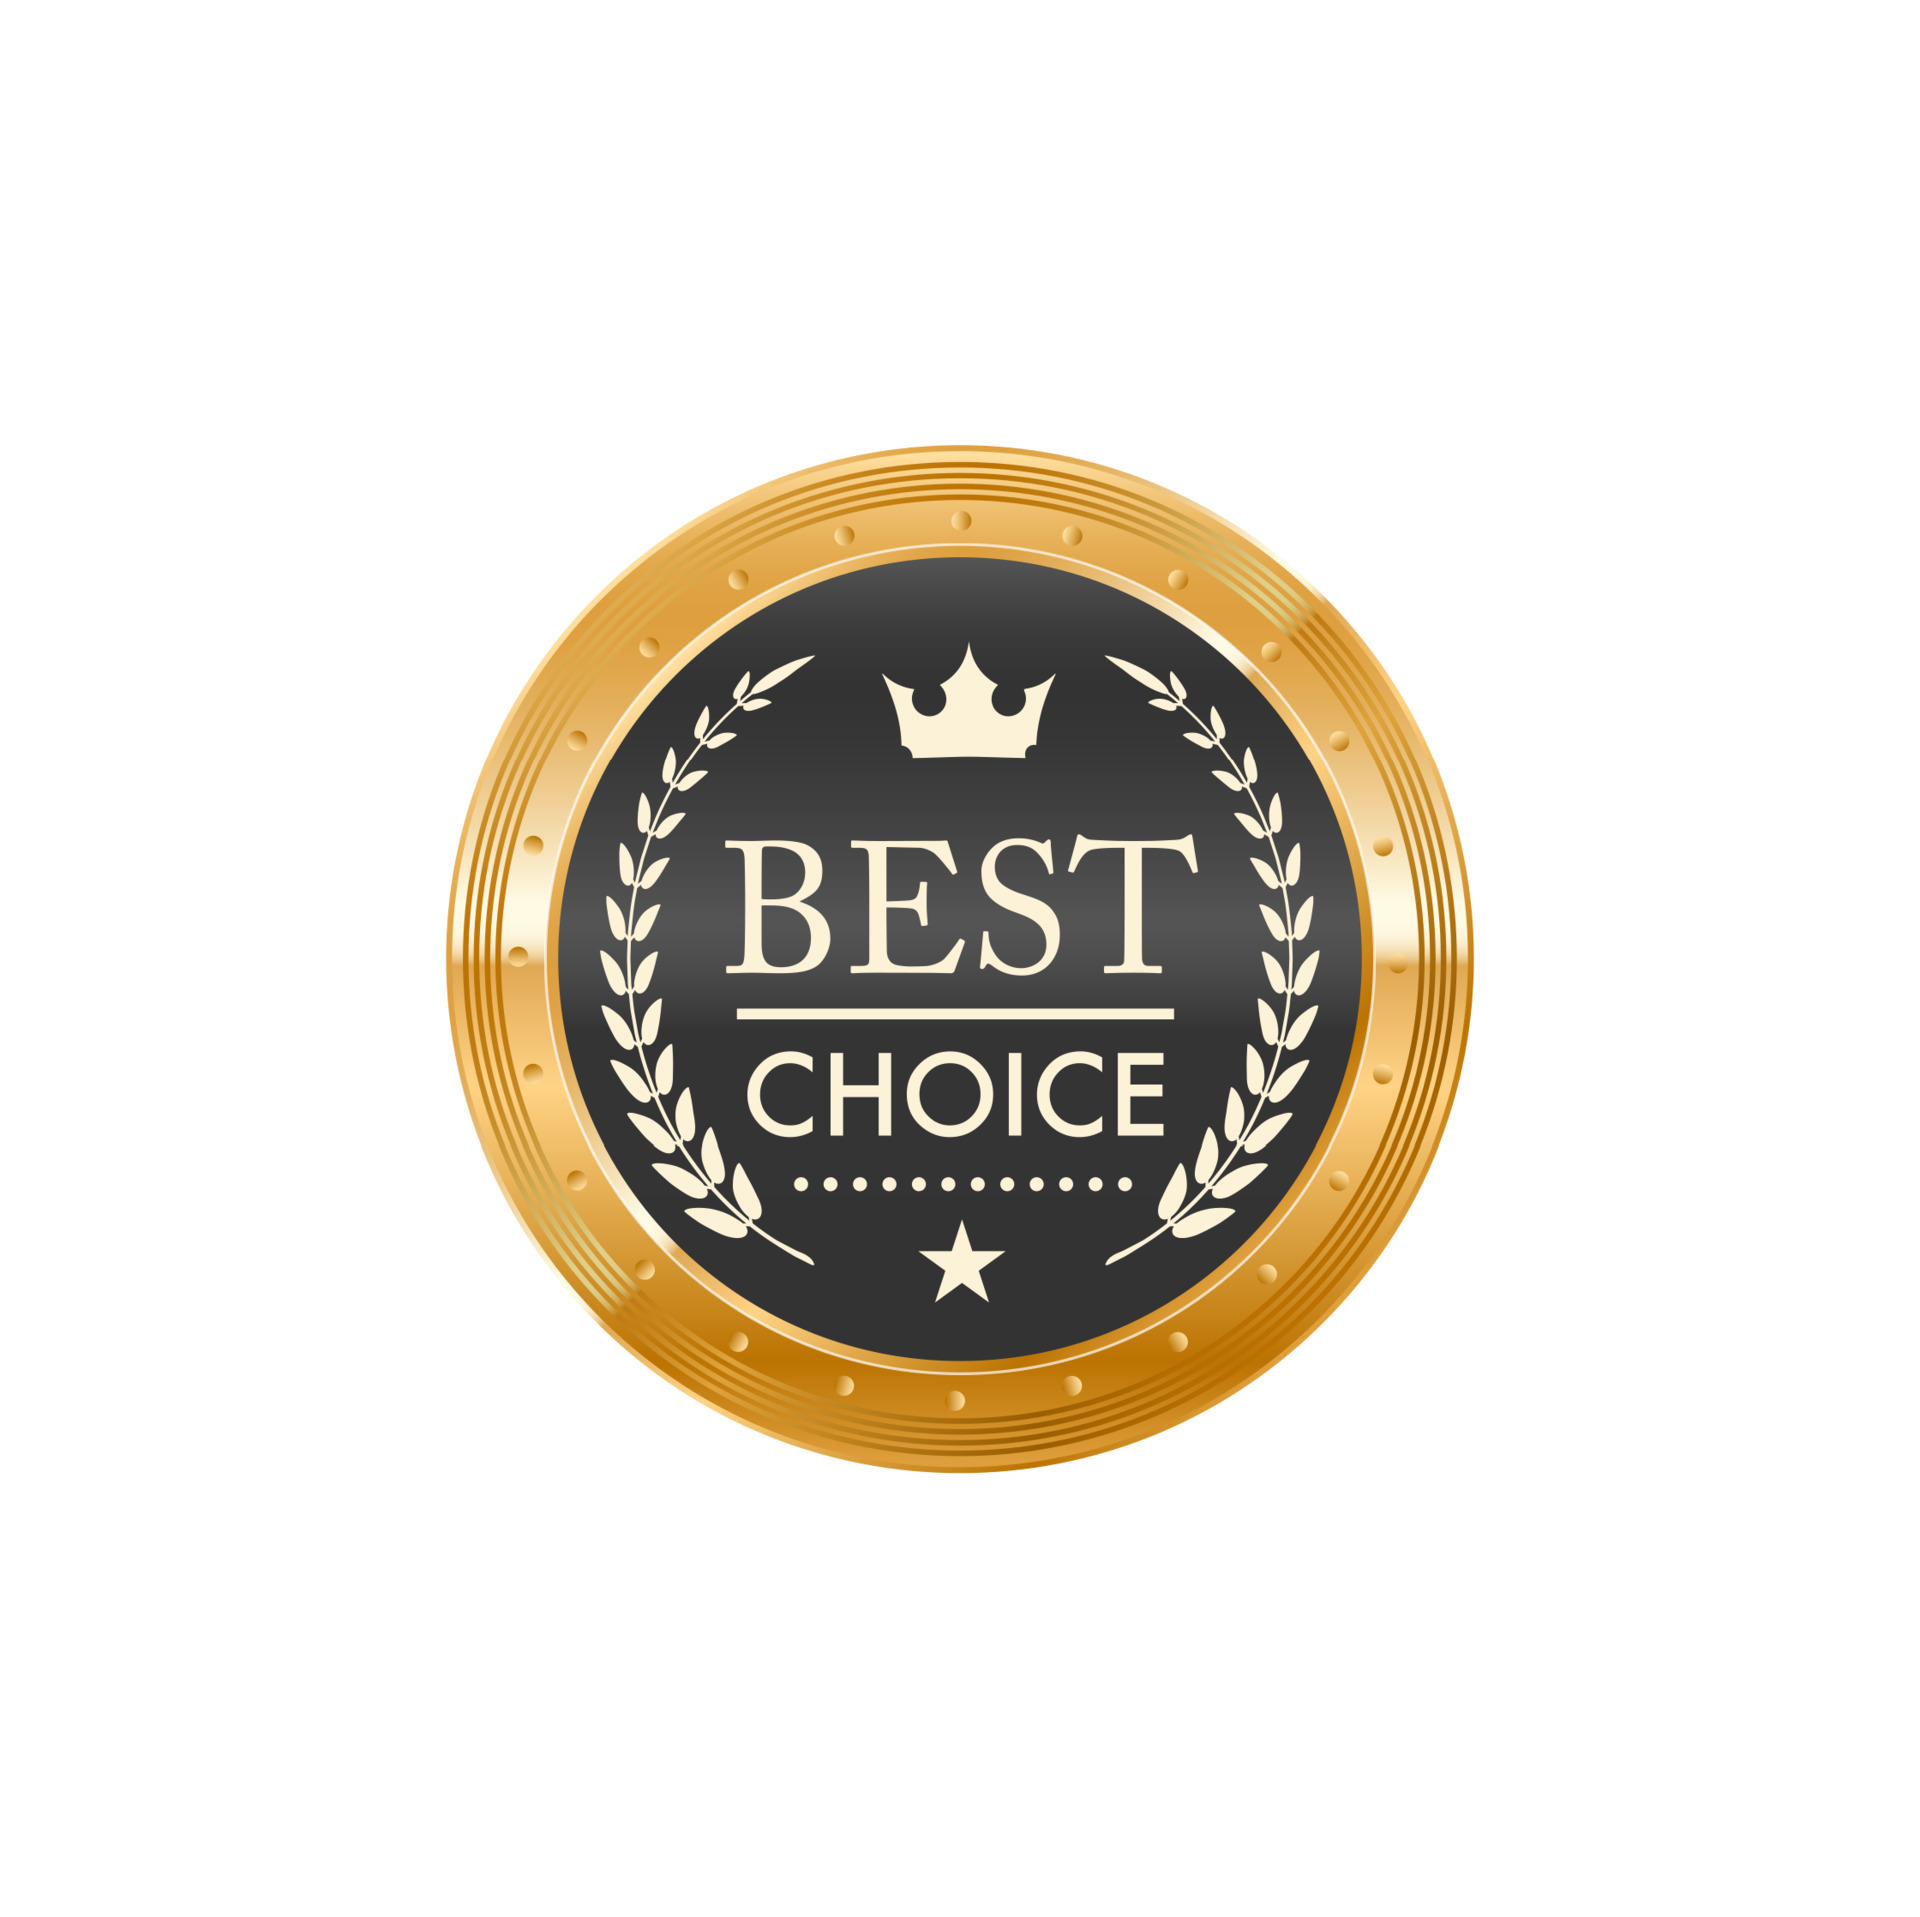 Best choice golden label badge design on transparent background